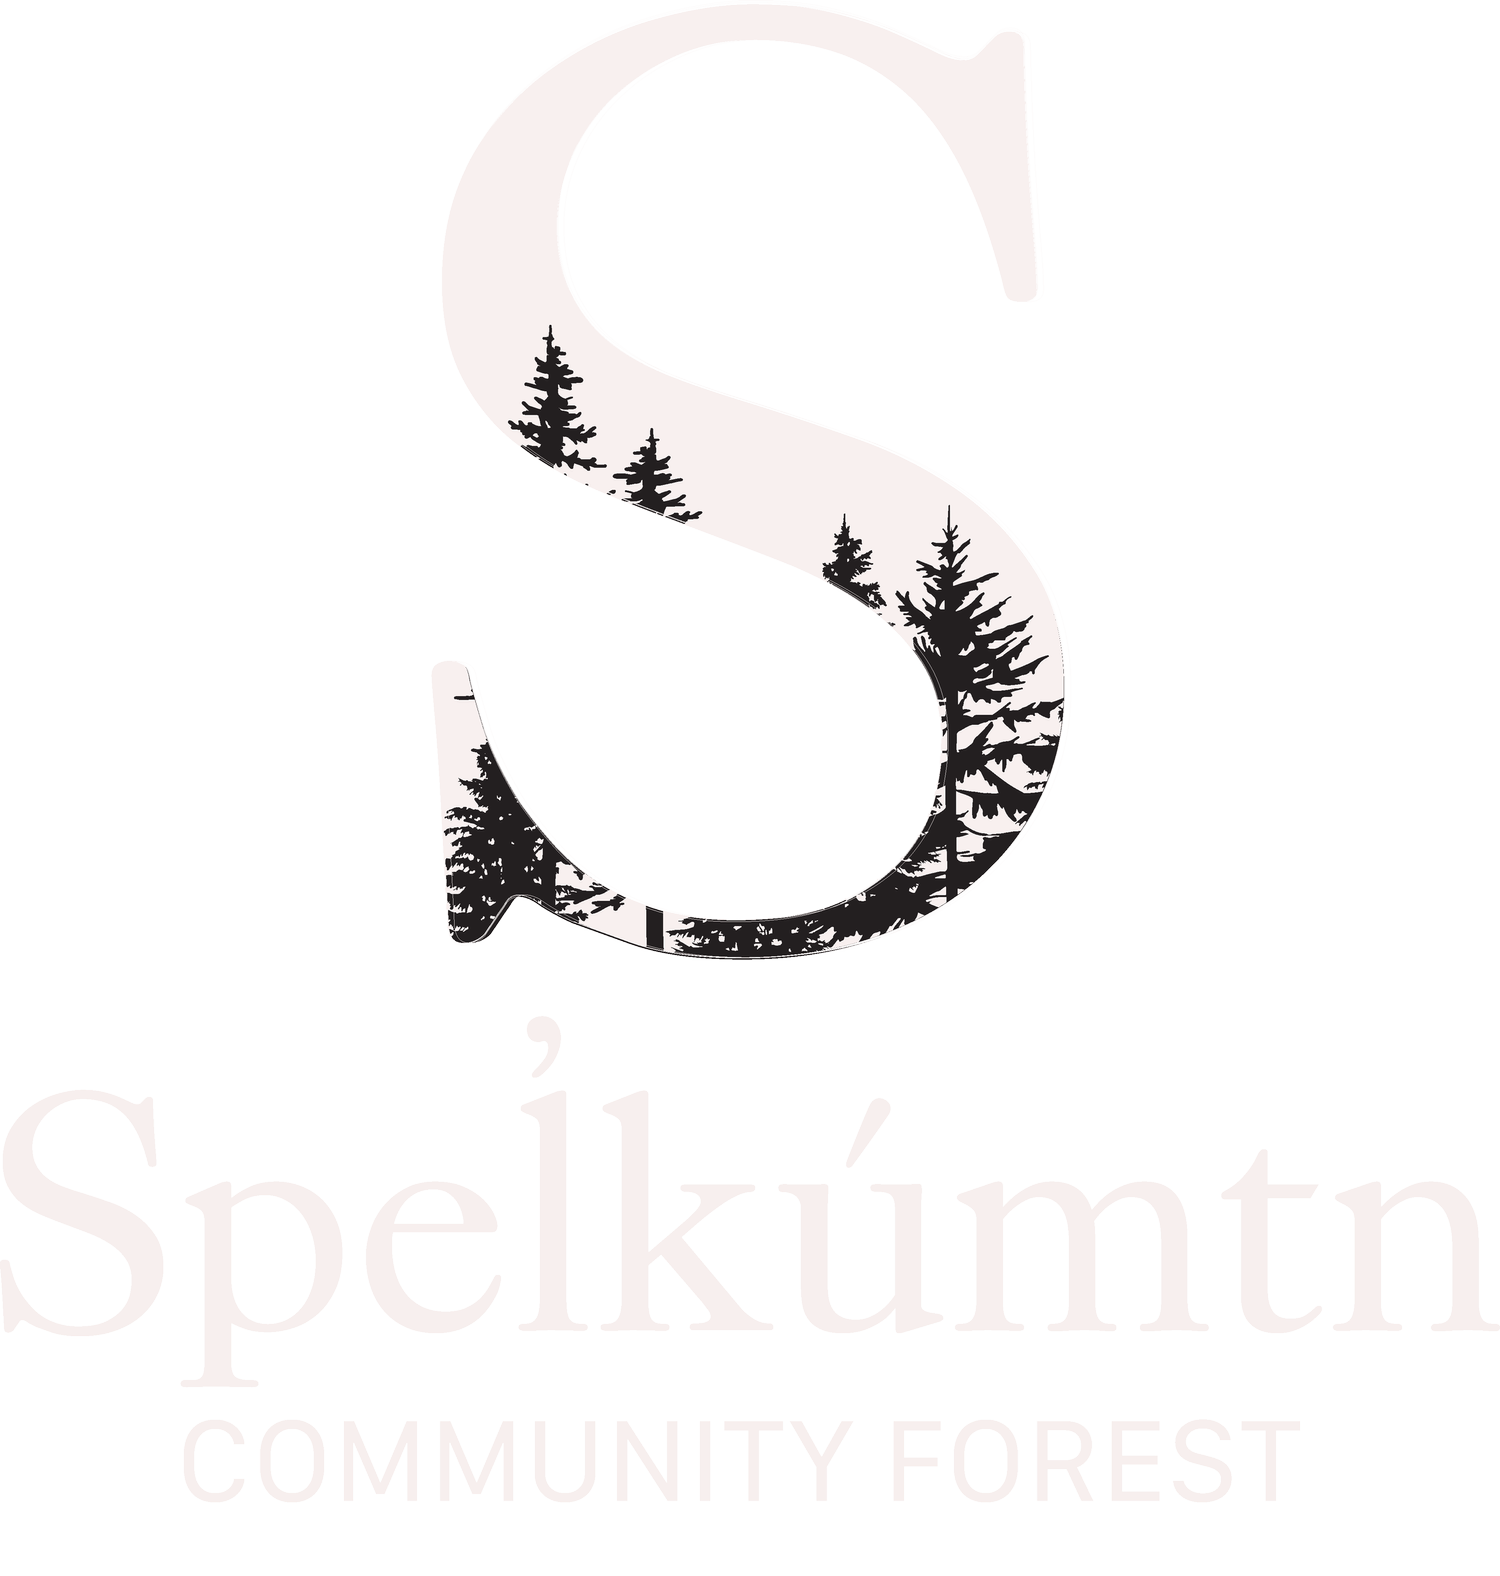 Speĺkúmtn Community Forest